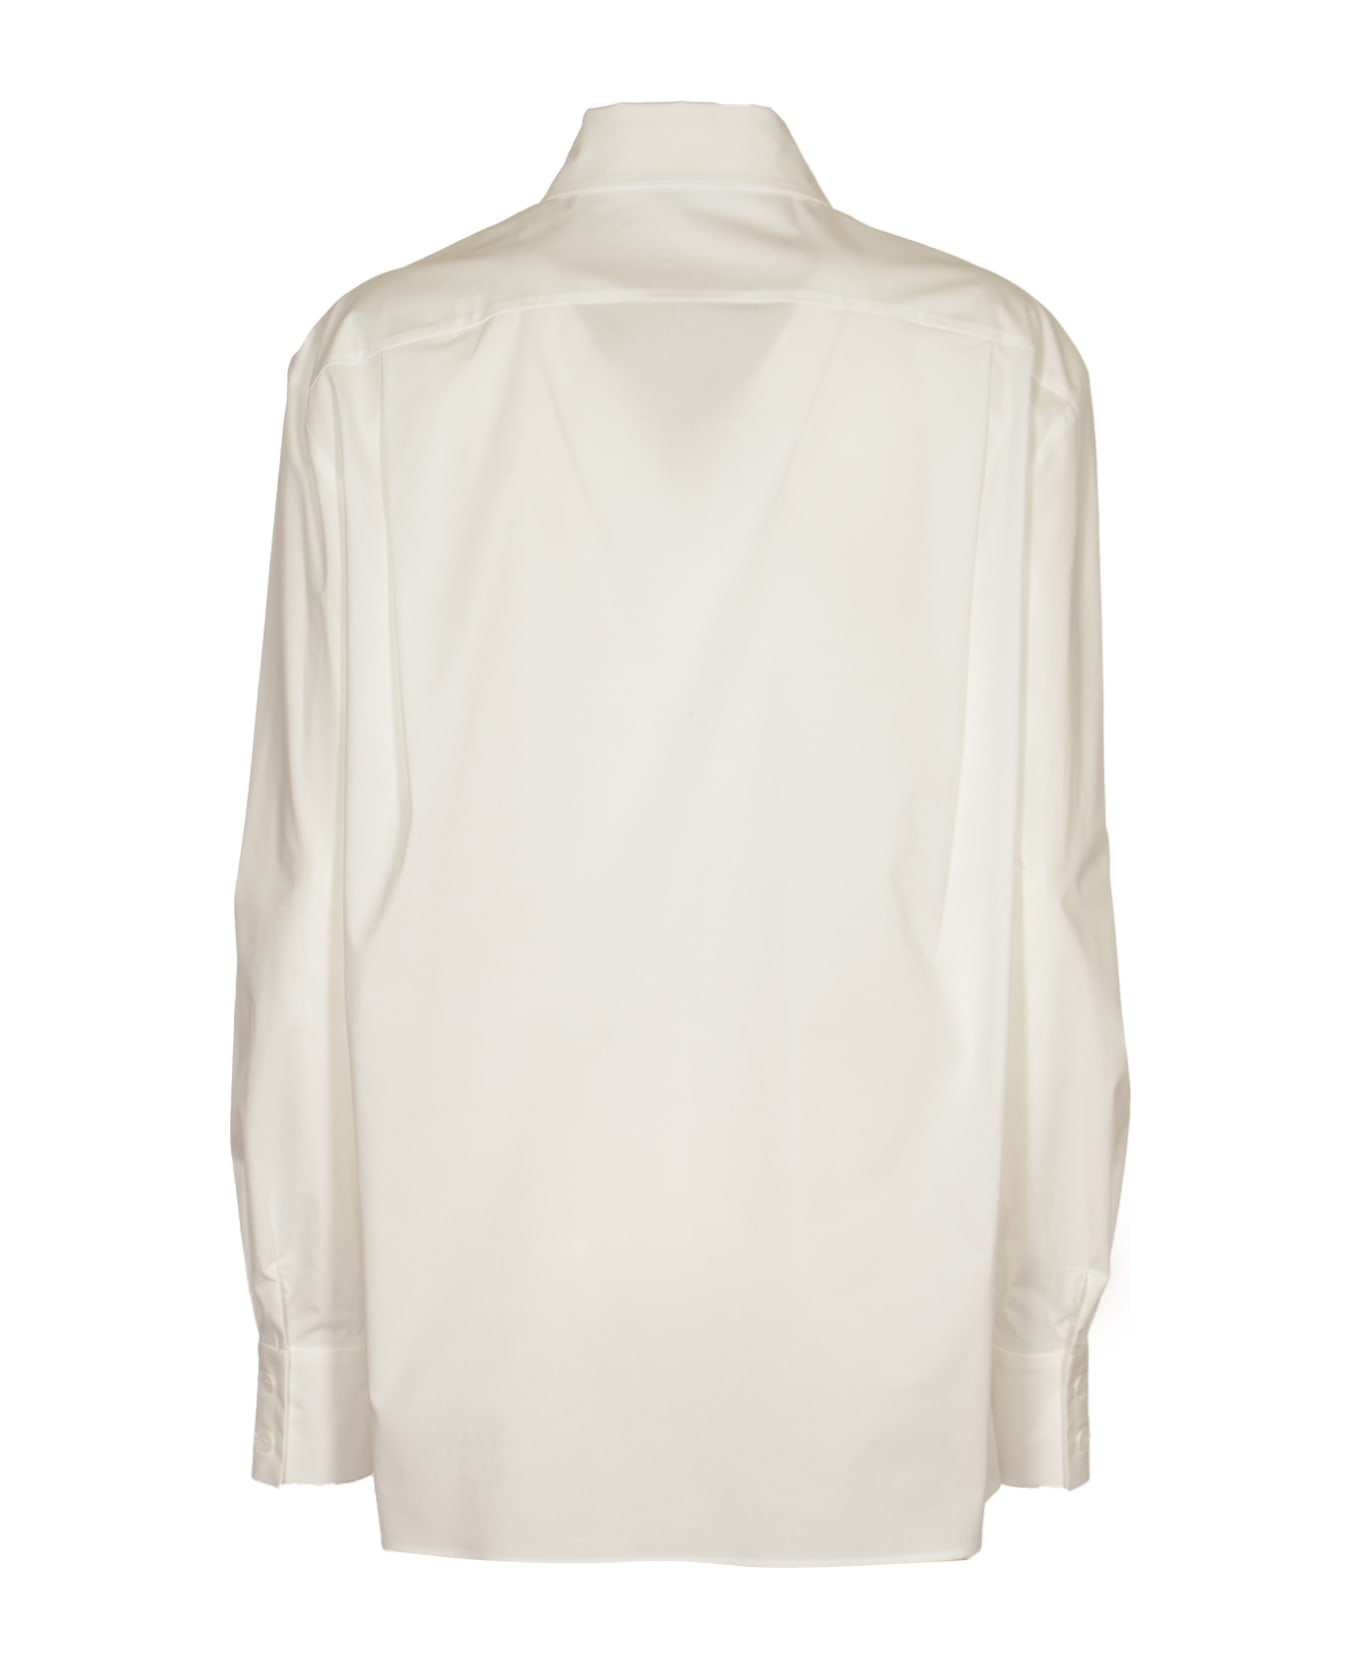 Alberta Ferretti Regular Plain Shirt - White